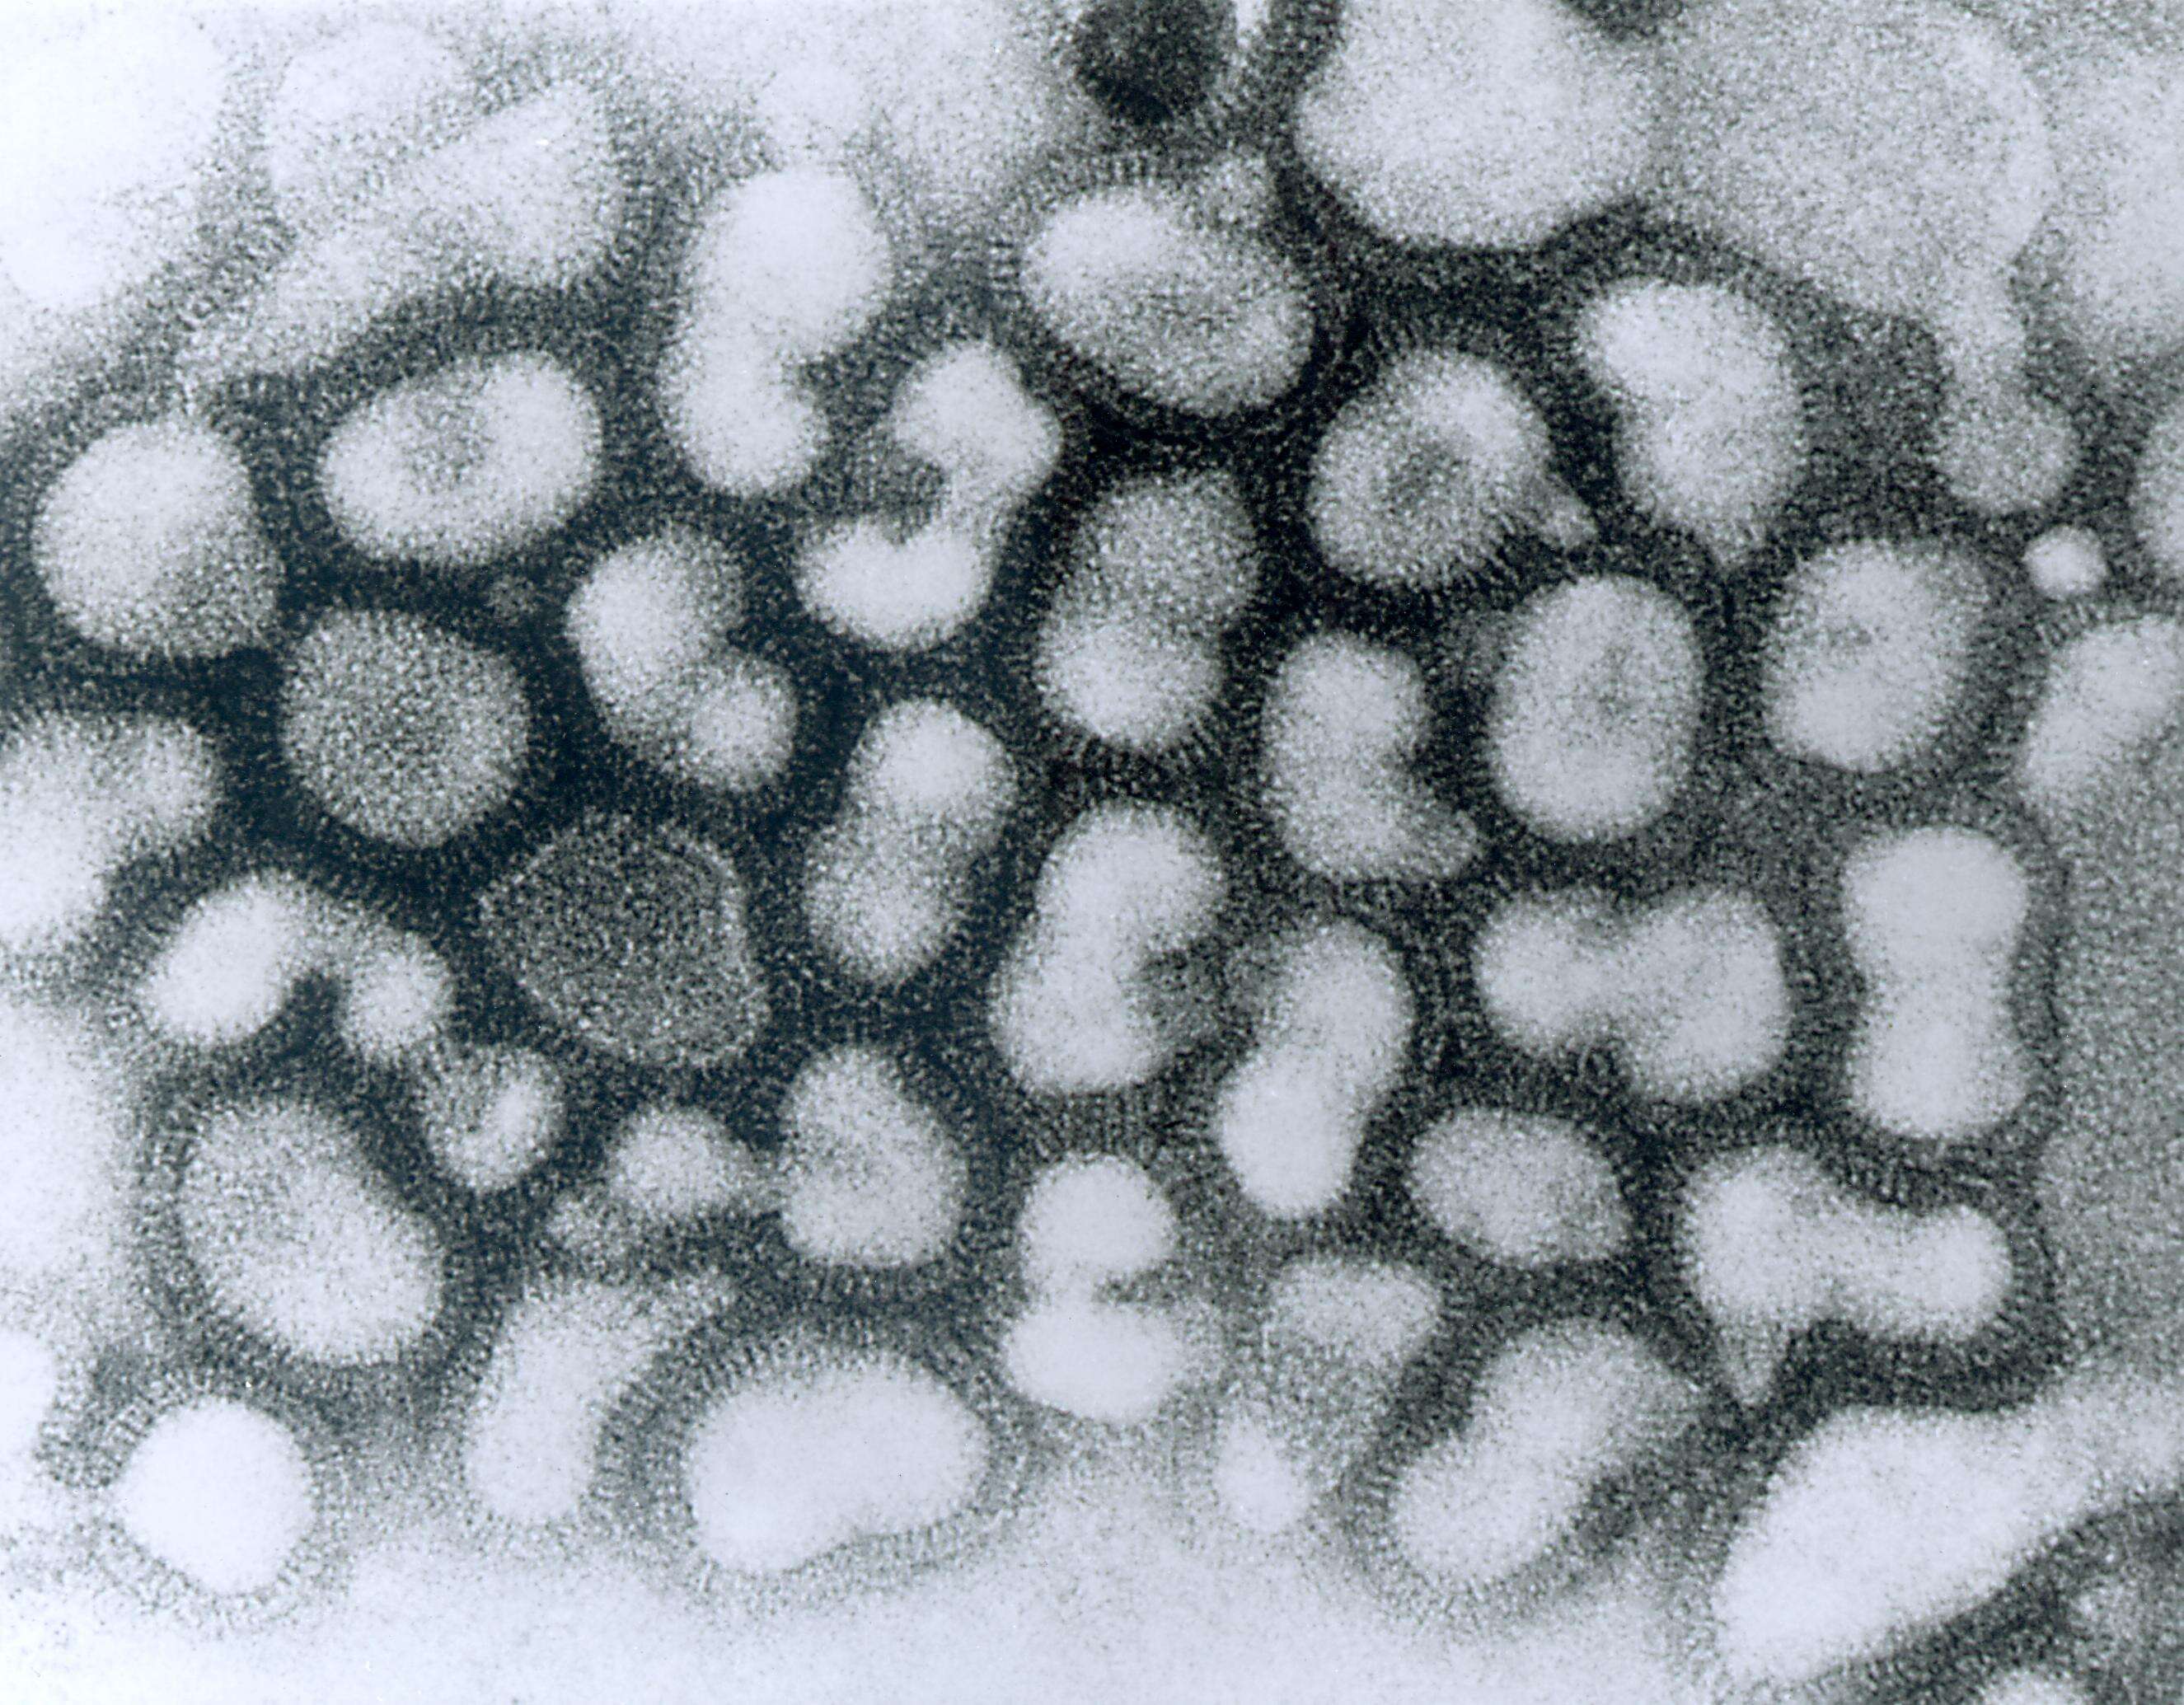 Plancia ëd Influenza A virus